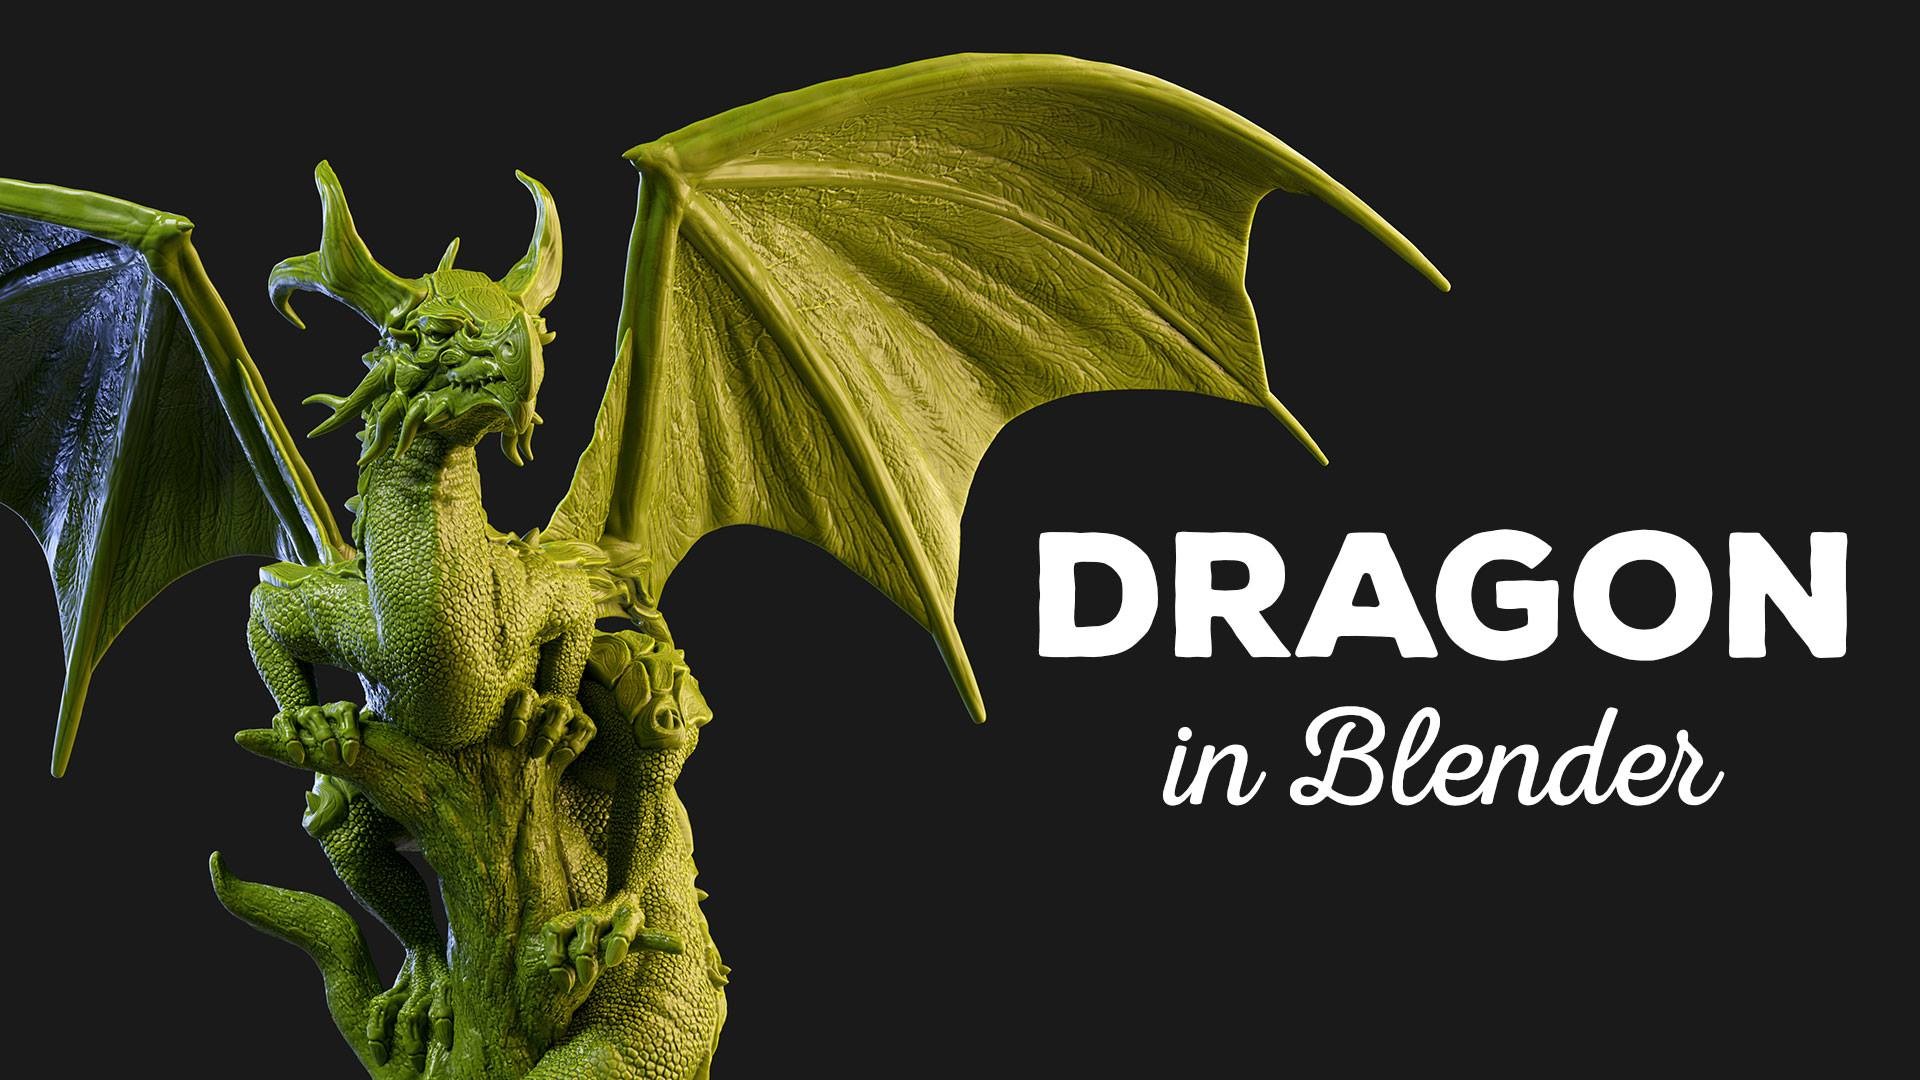 blender 3d dragon model download